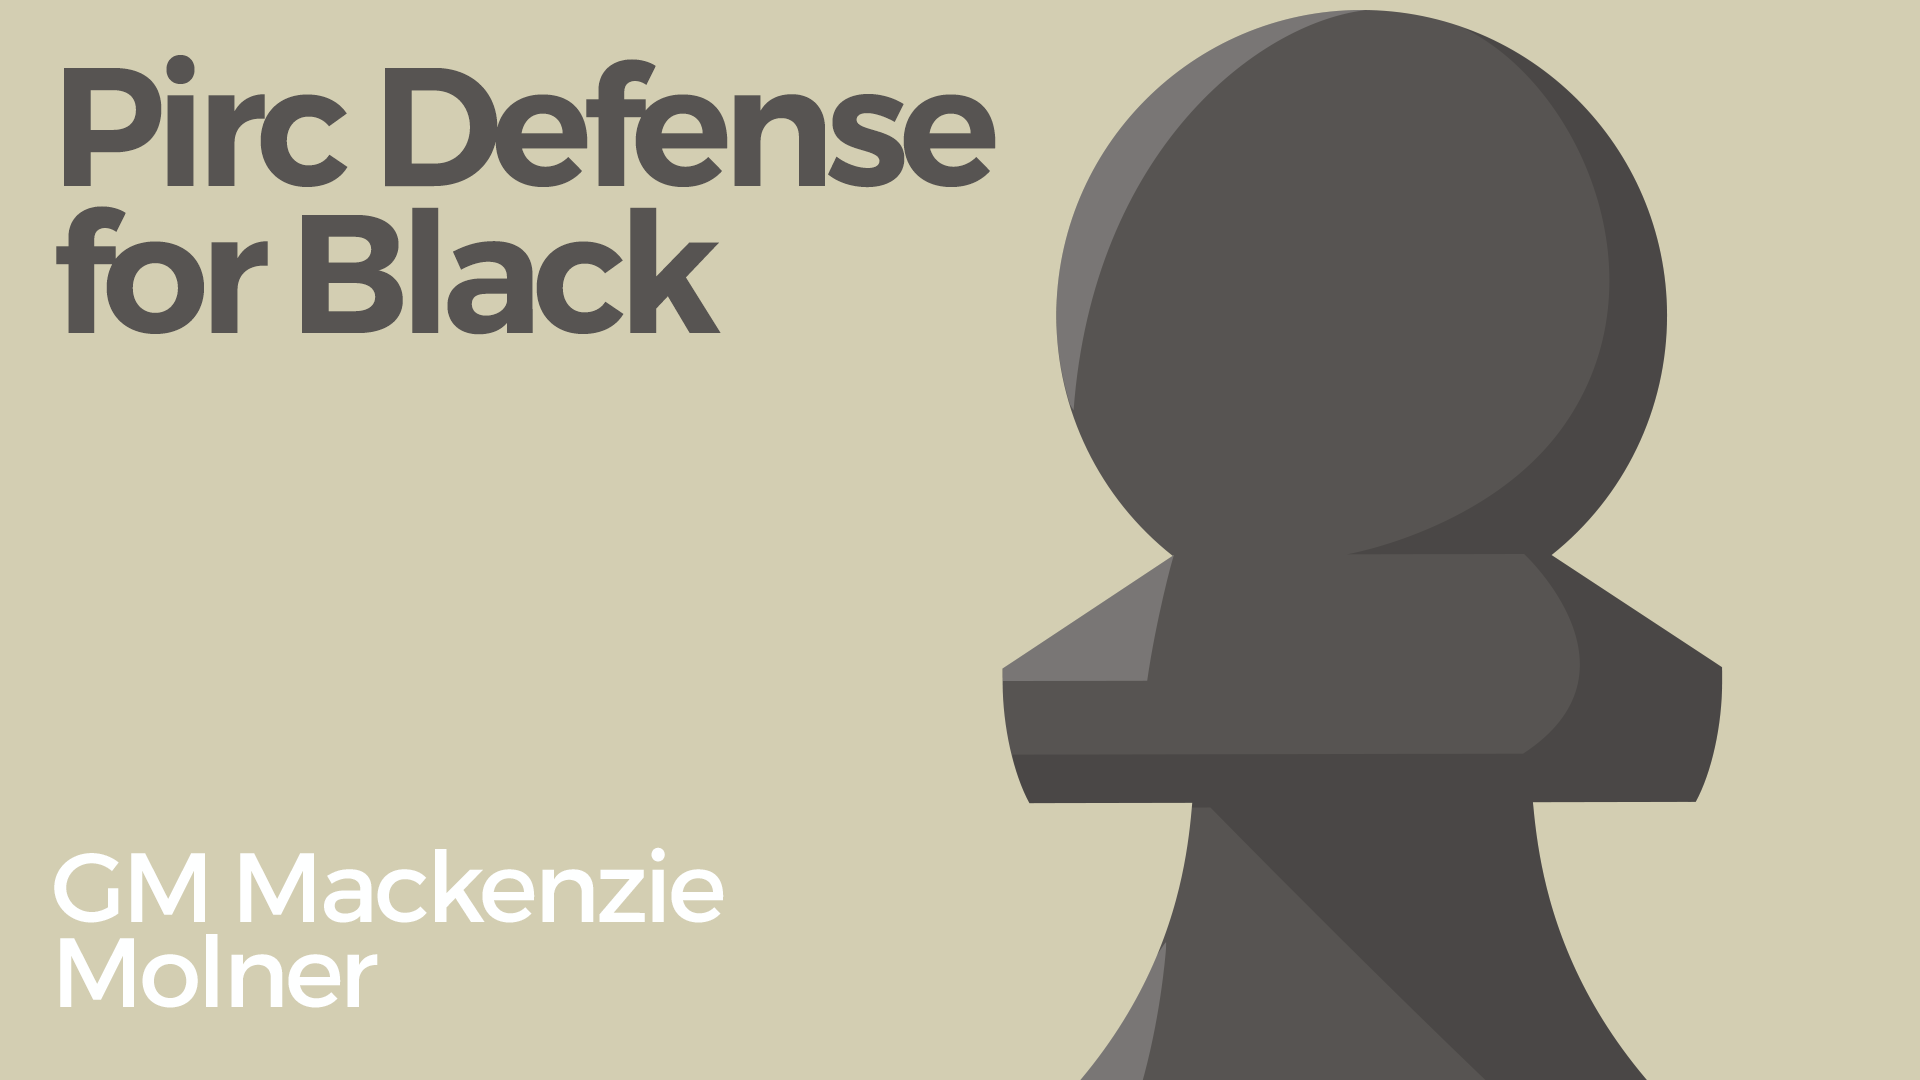 Learn the Pirc Defense as Black